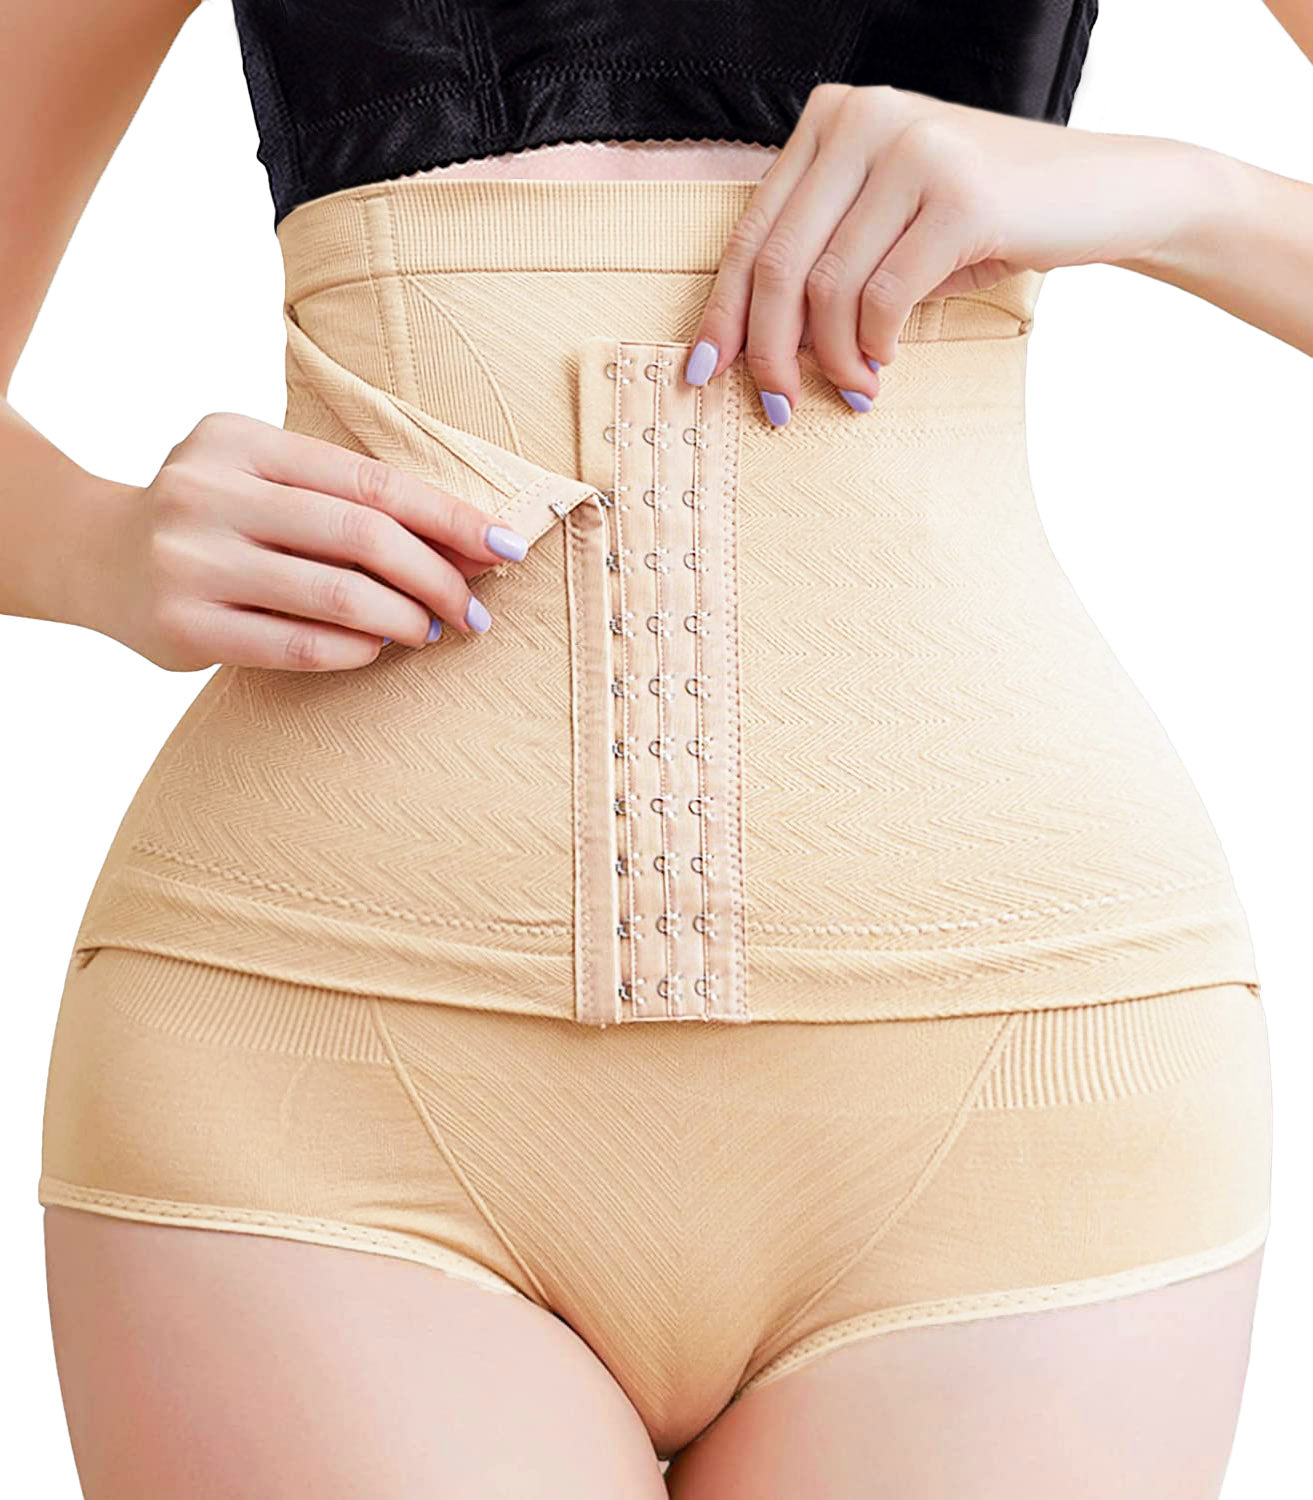 Tummy Control Body Shaper Women High Waist Panty Slimming Knickers Underwear  UK